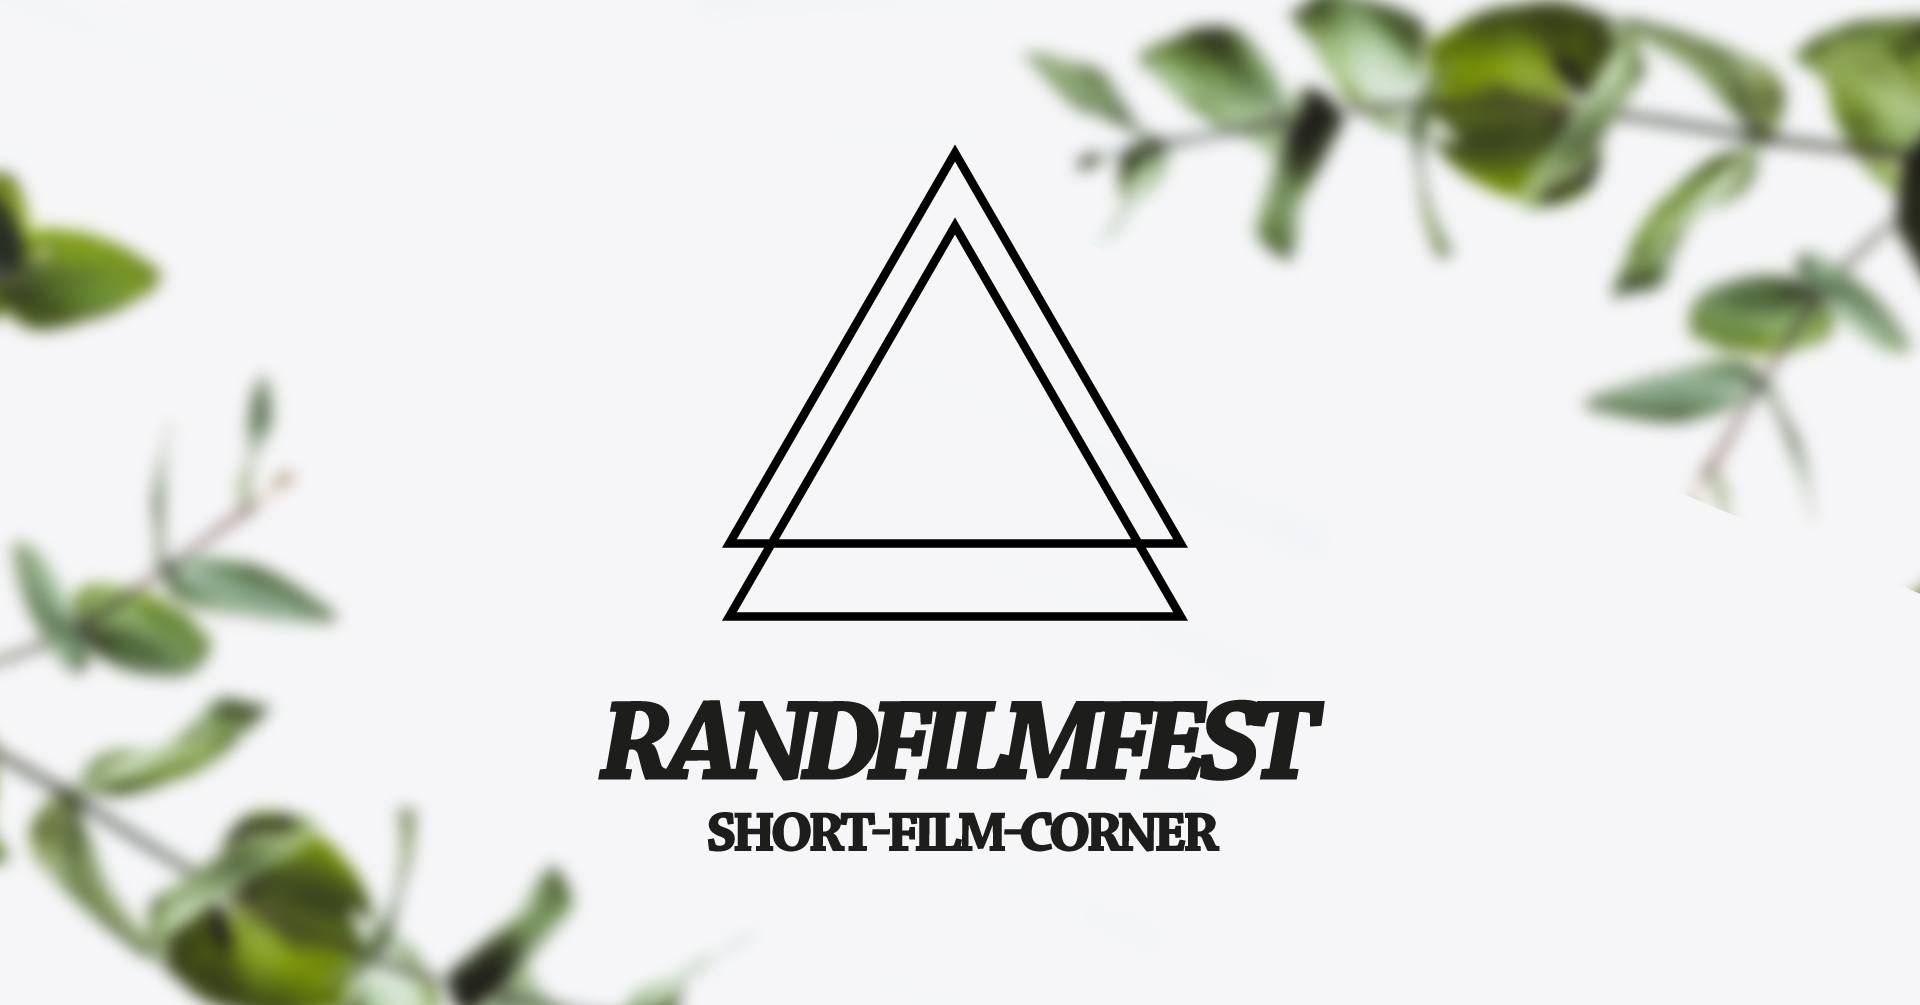 Randfilmfest Short-Film-Corner - Part 3